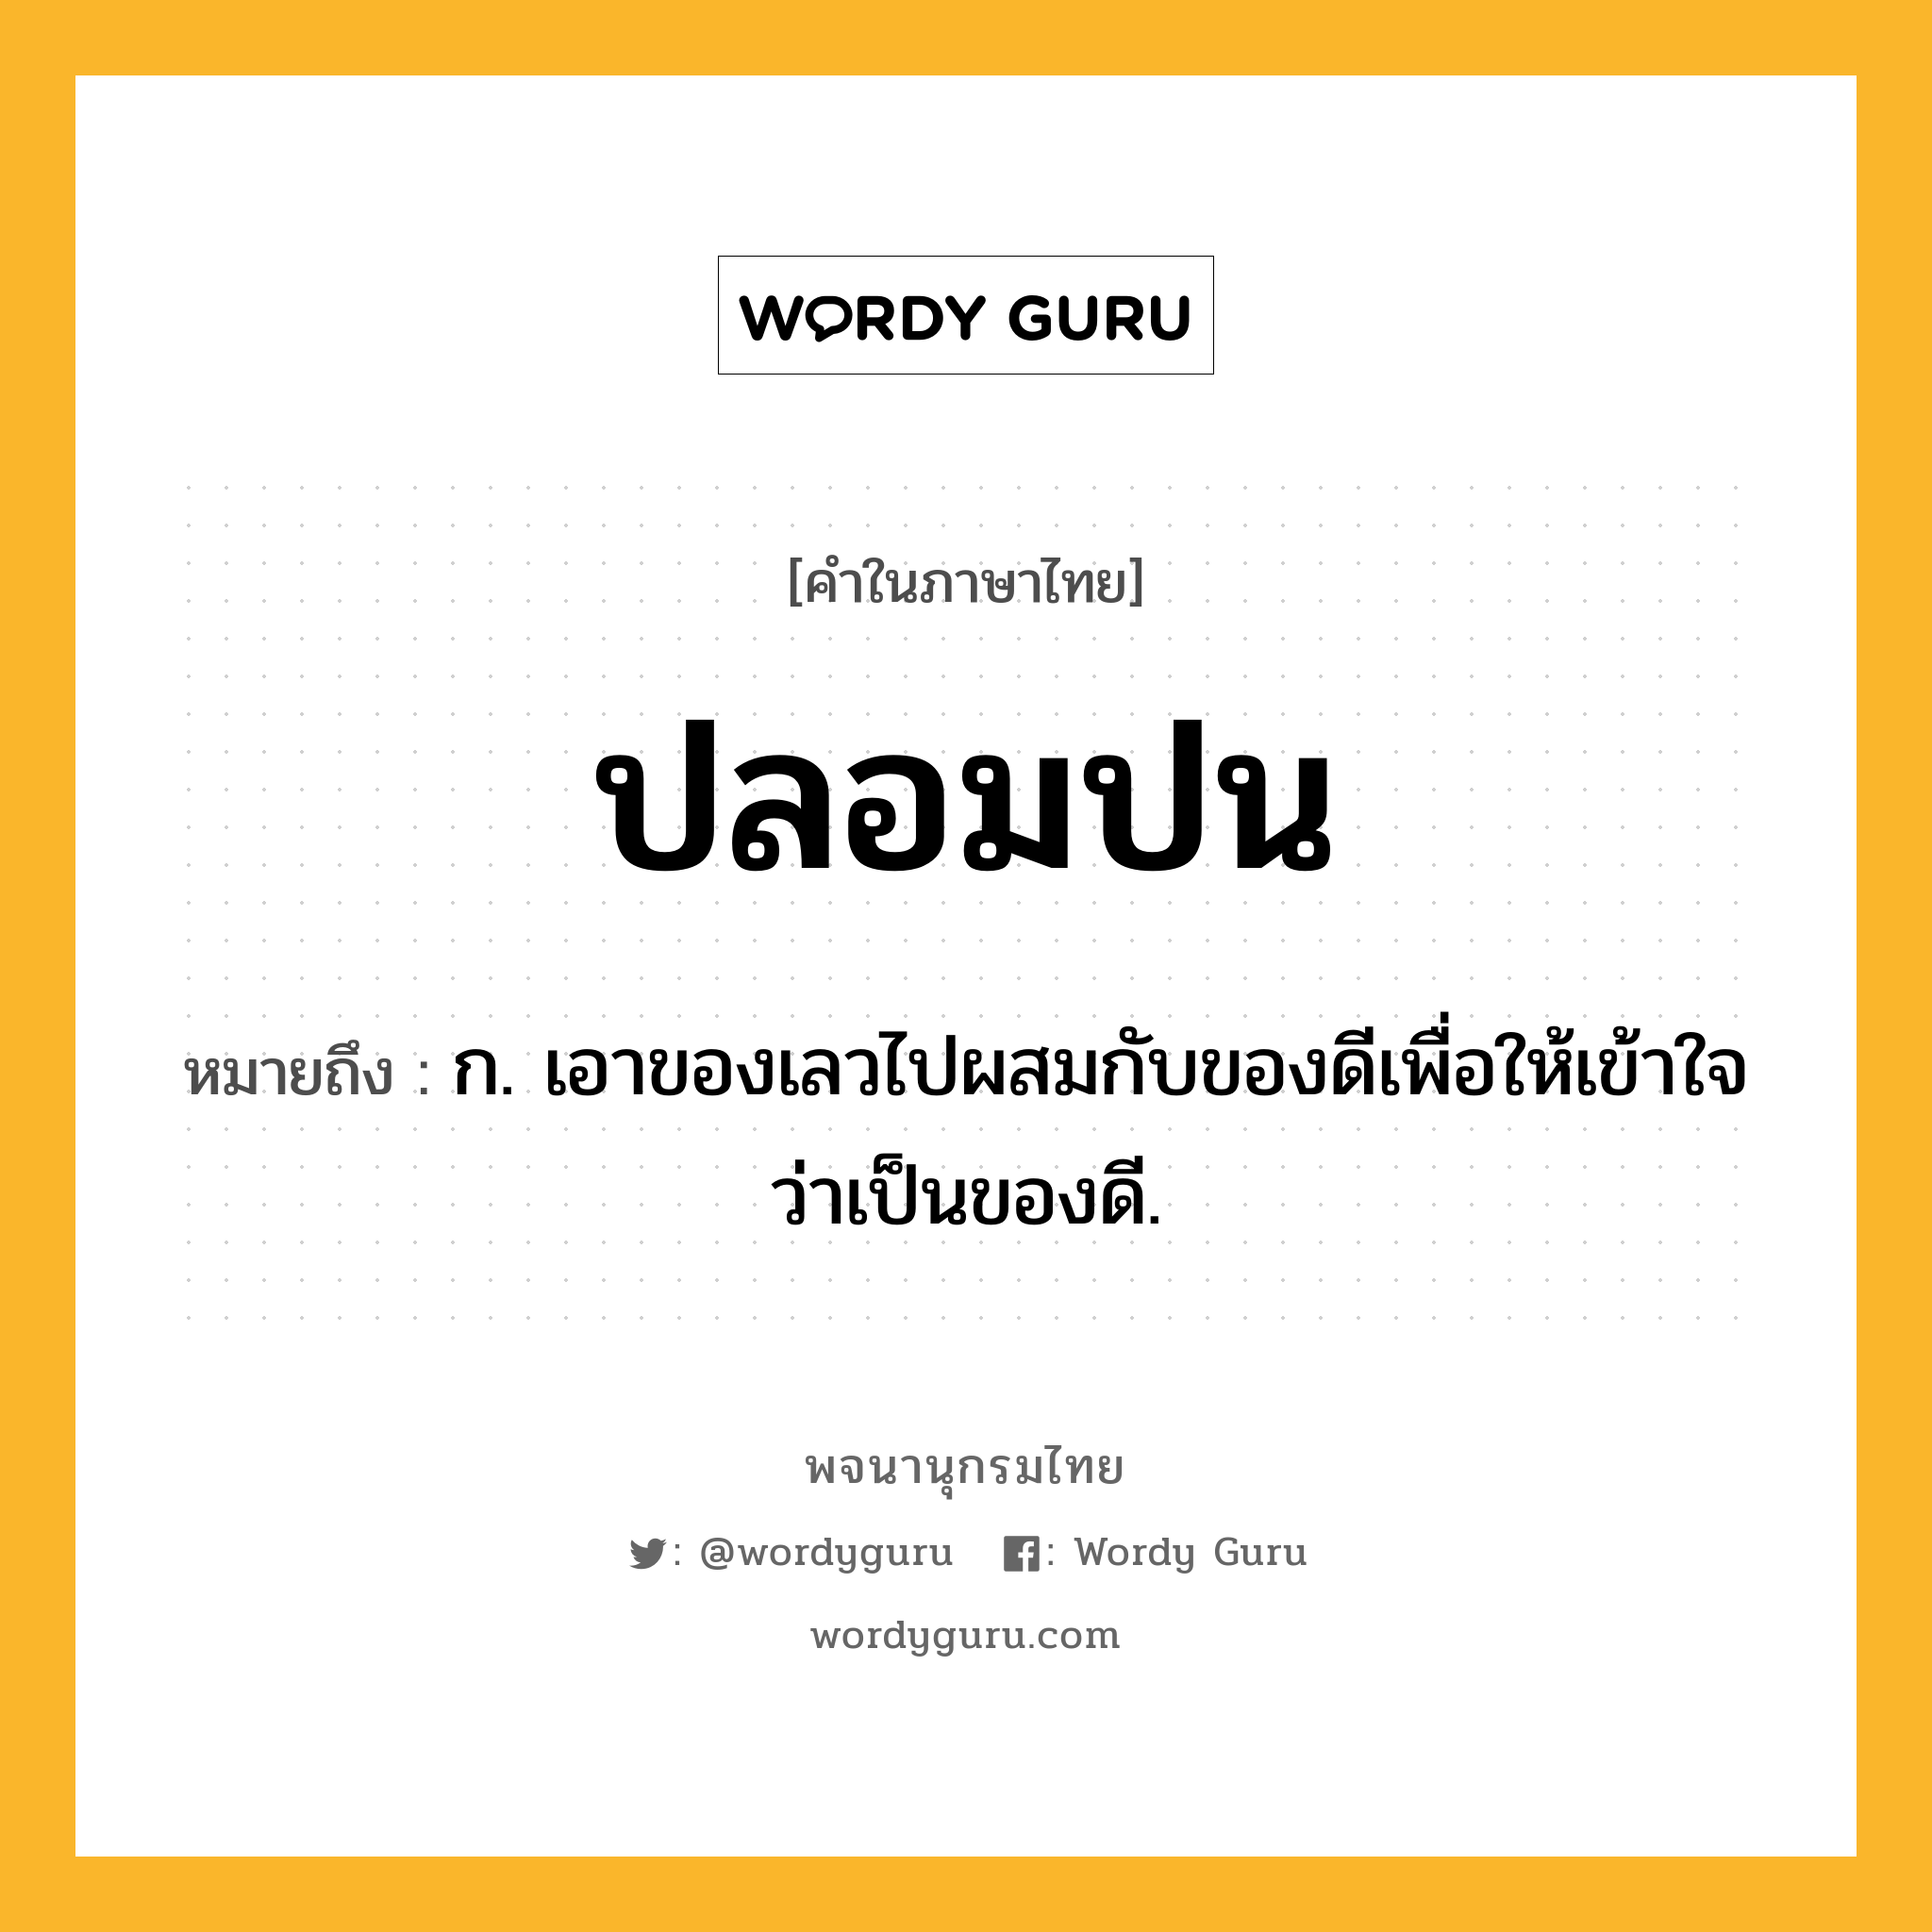 ปลอมปน หมายถึงอะไร?, คำในภาษาไทย ปลอมปน หมายถึง ก. เอาของเลวไปผสมกับของดีเพื่อให้เข้าใจว่าเป็นของดี.